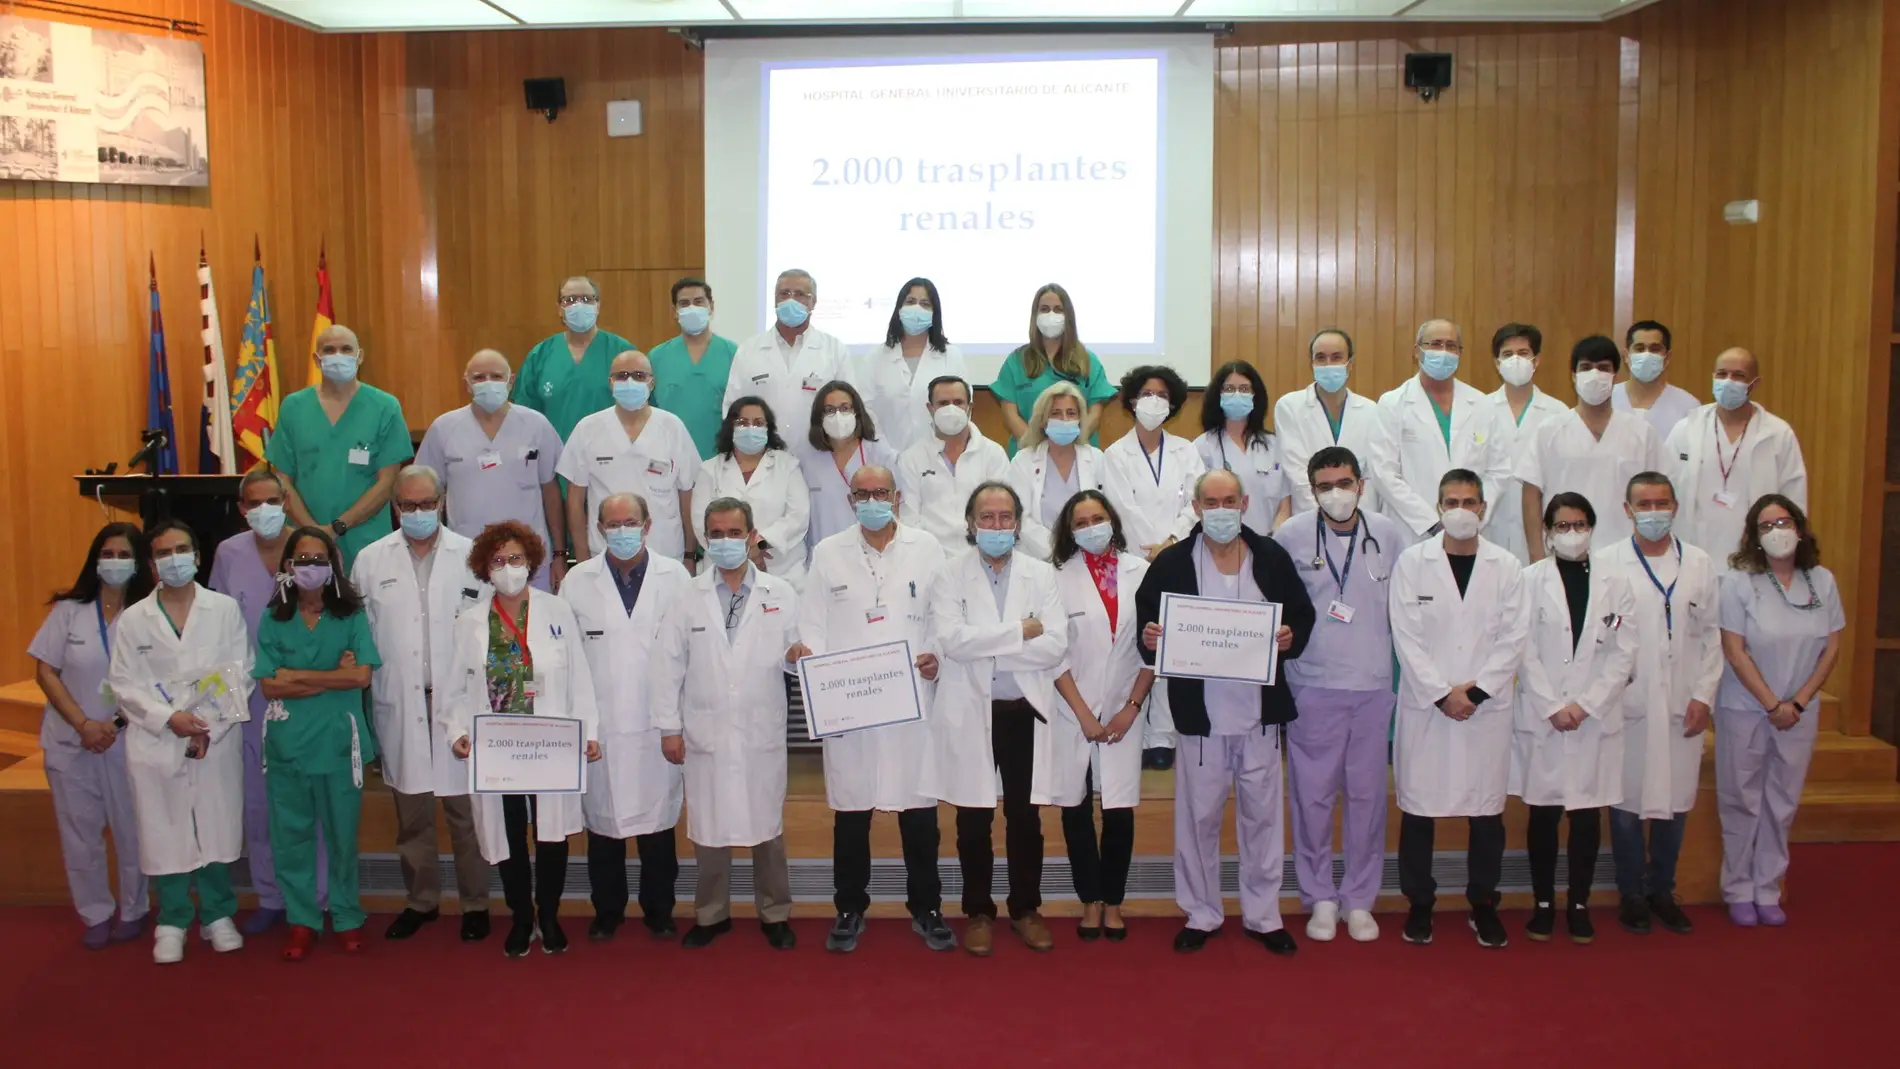 El equipo de la unidad de trasplantes del Hospital General de Alicante